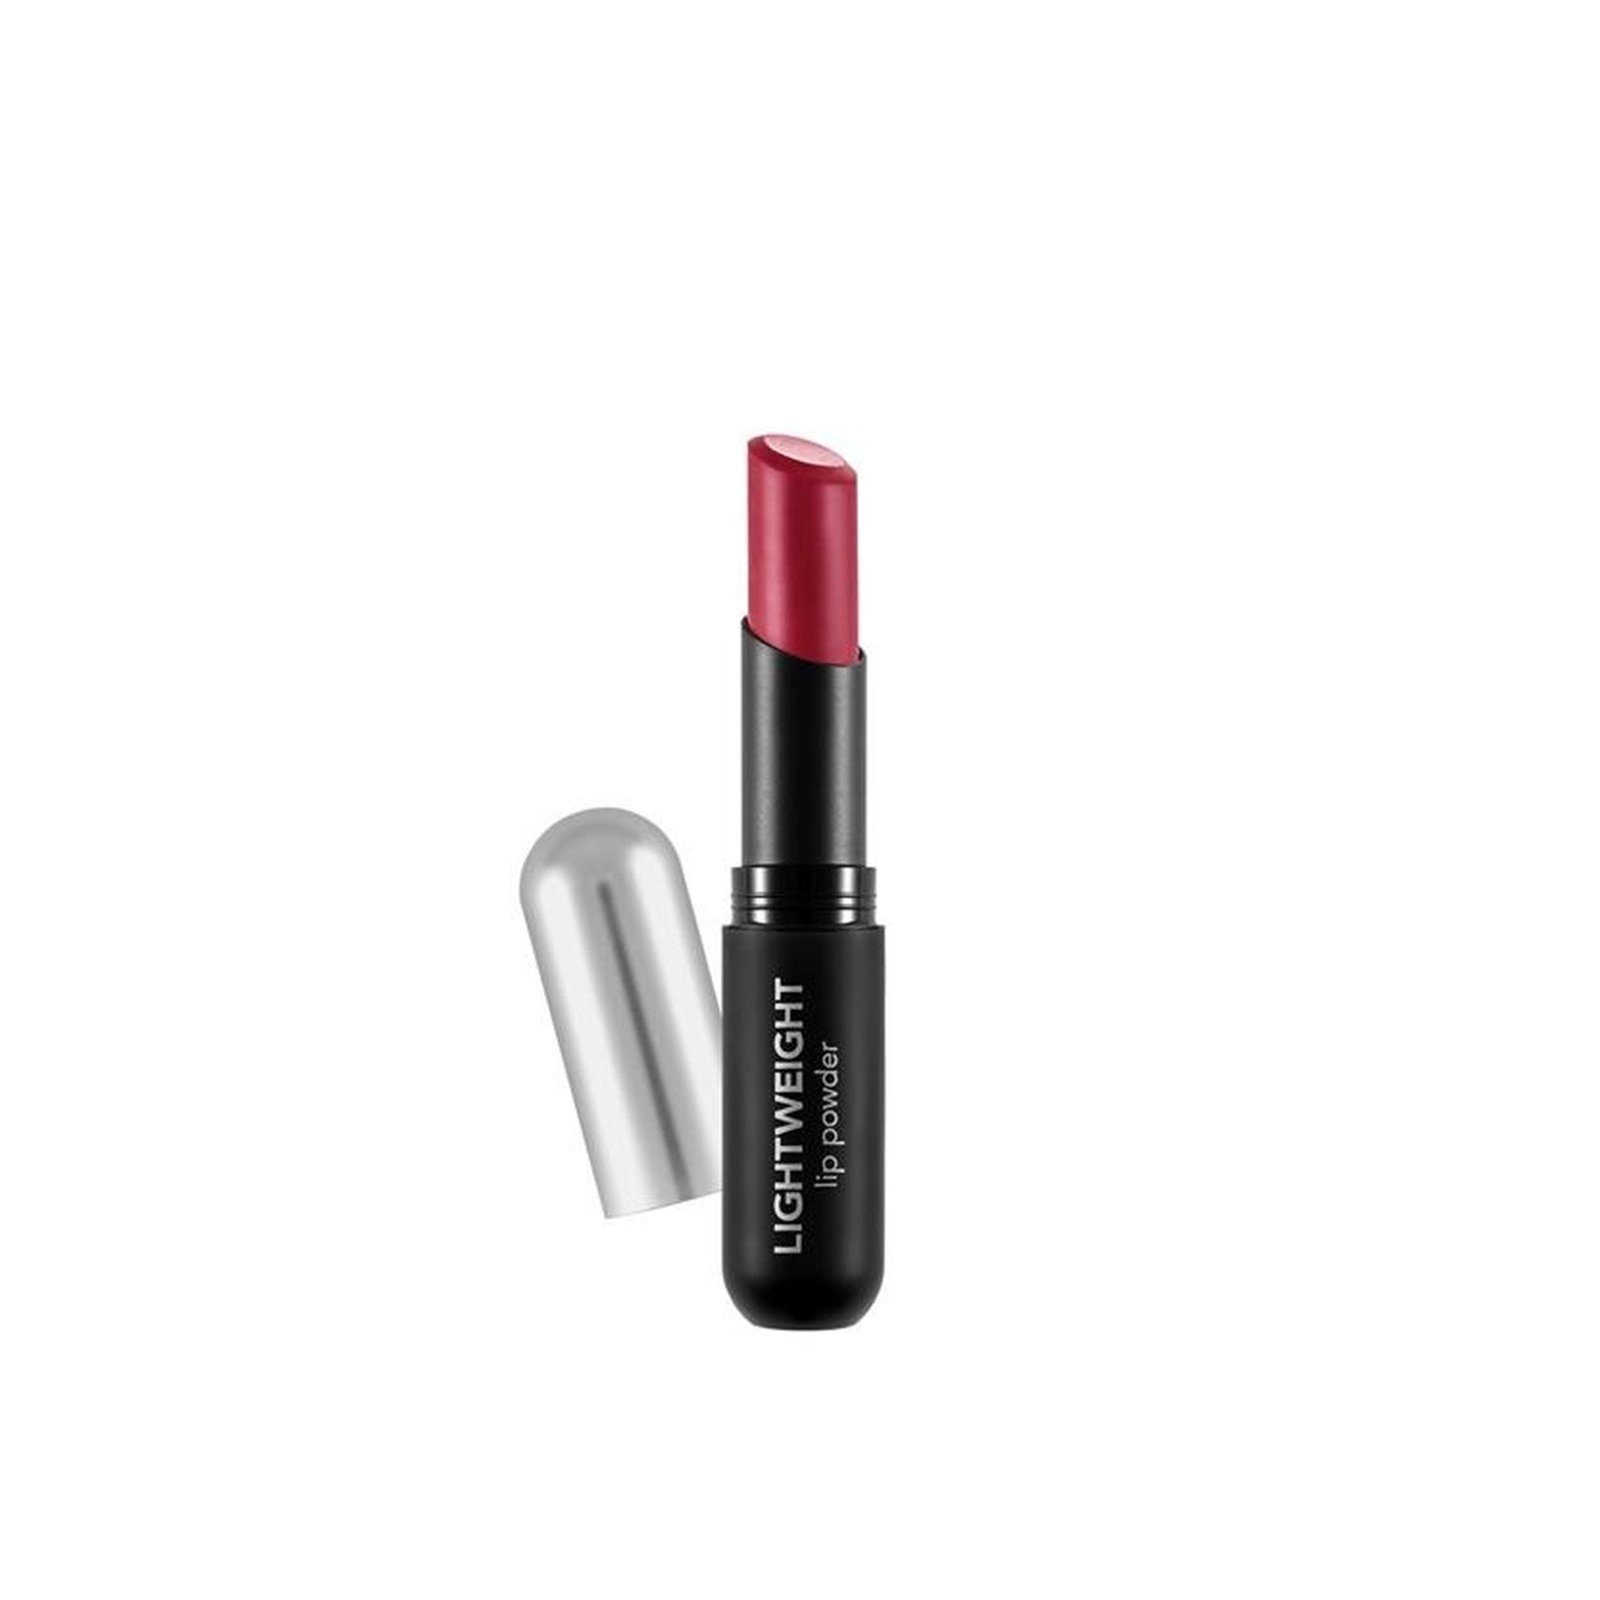 Flormar Lightweight Lip Powder Ultra Light Lipstick 012 Legendary Red 3g